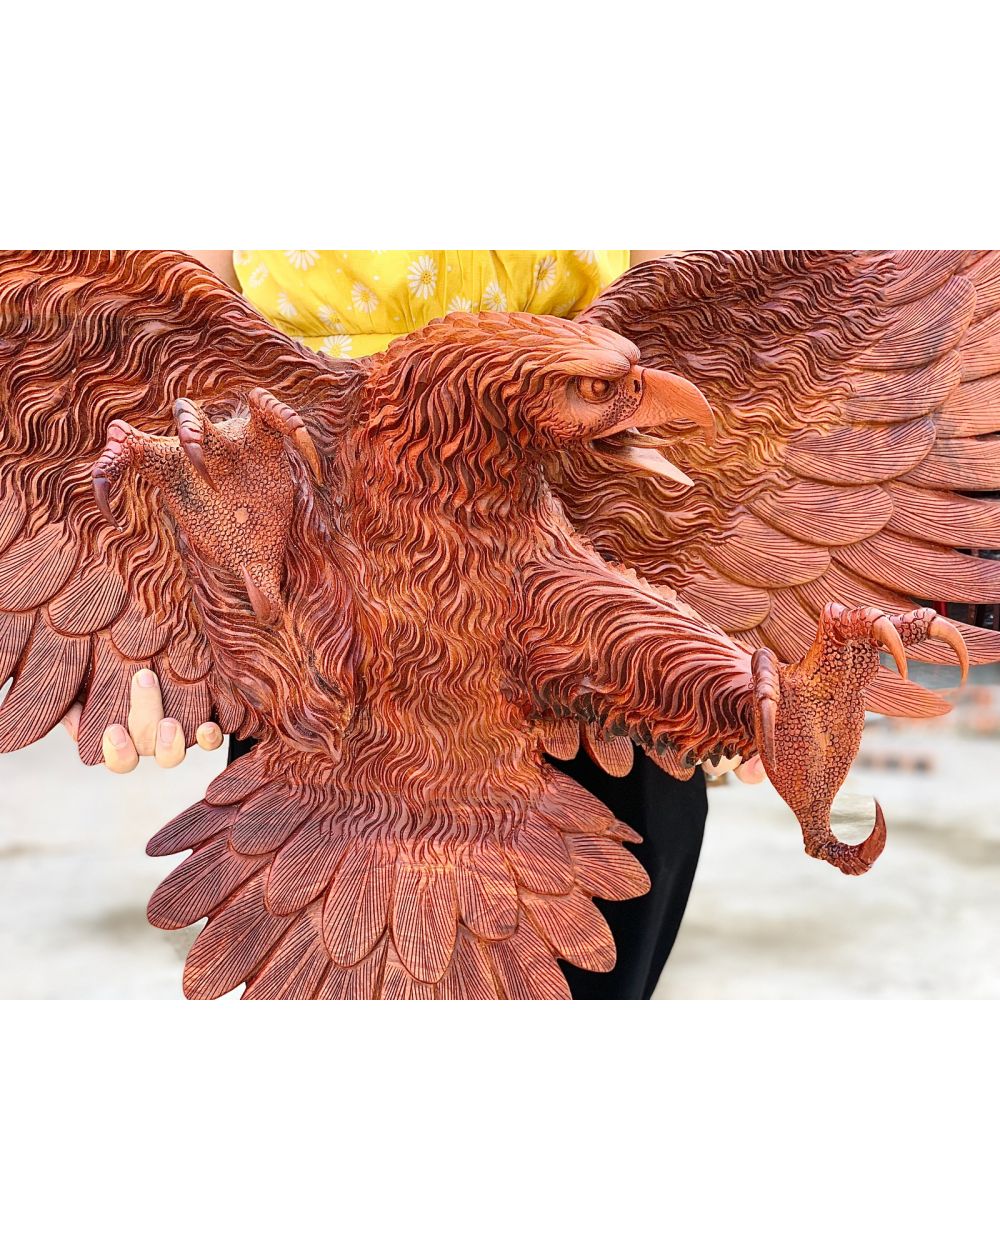 Chim đại bàng: 626.508 ảnh có sẵn và hình chụp miễn phí bản quyền |  Shutterstock